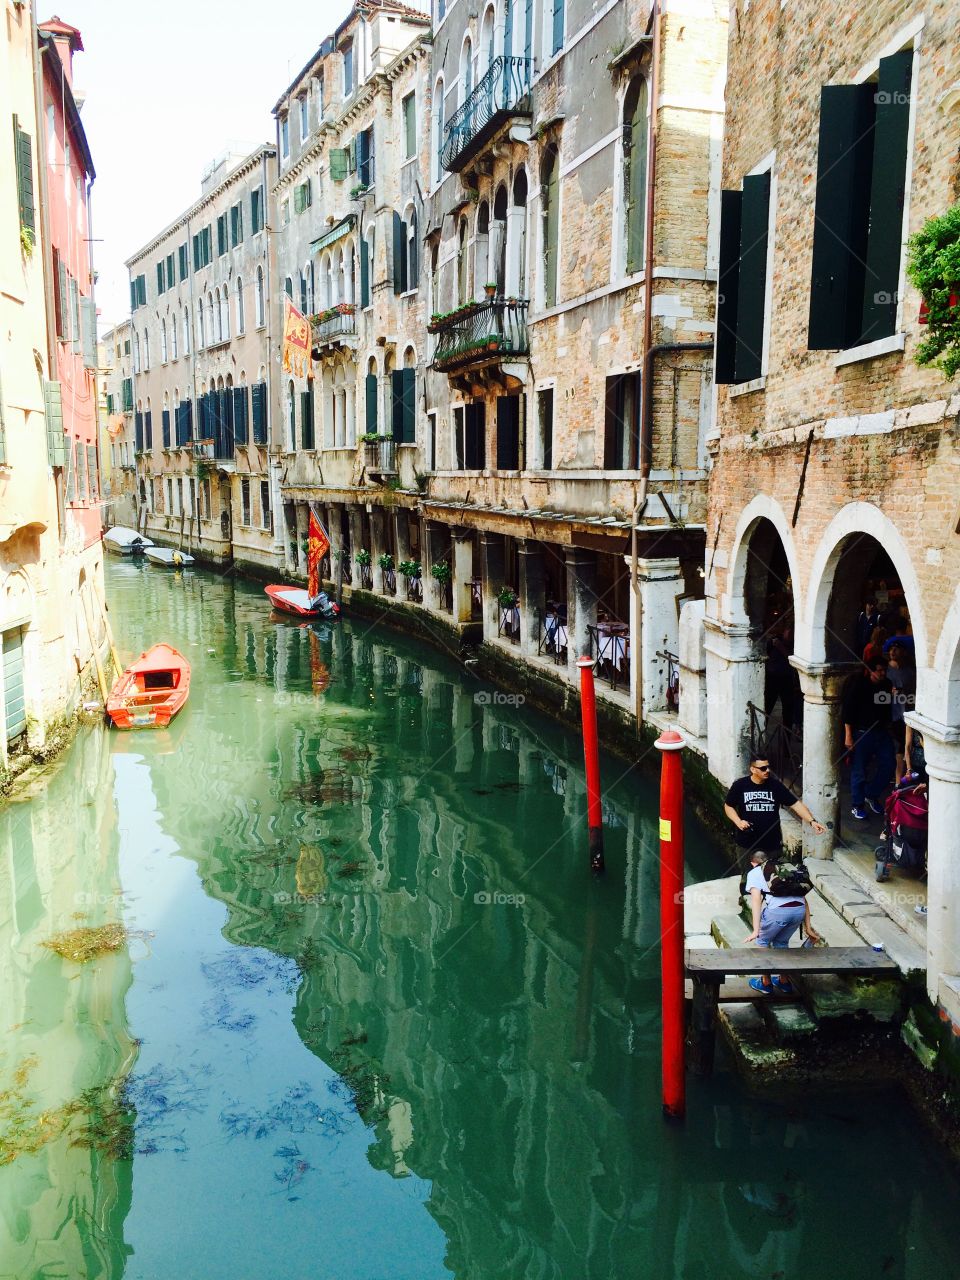 Venice. Italy